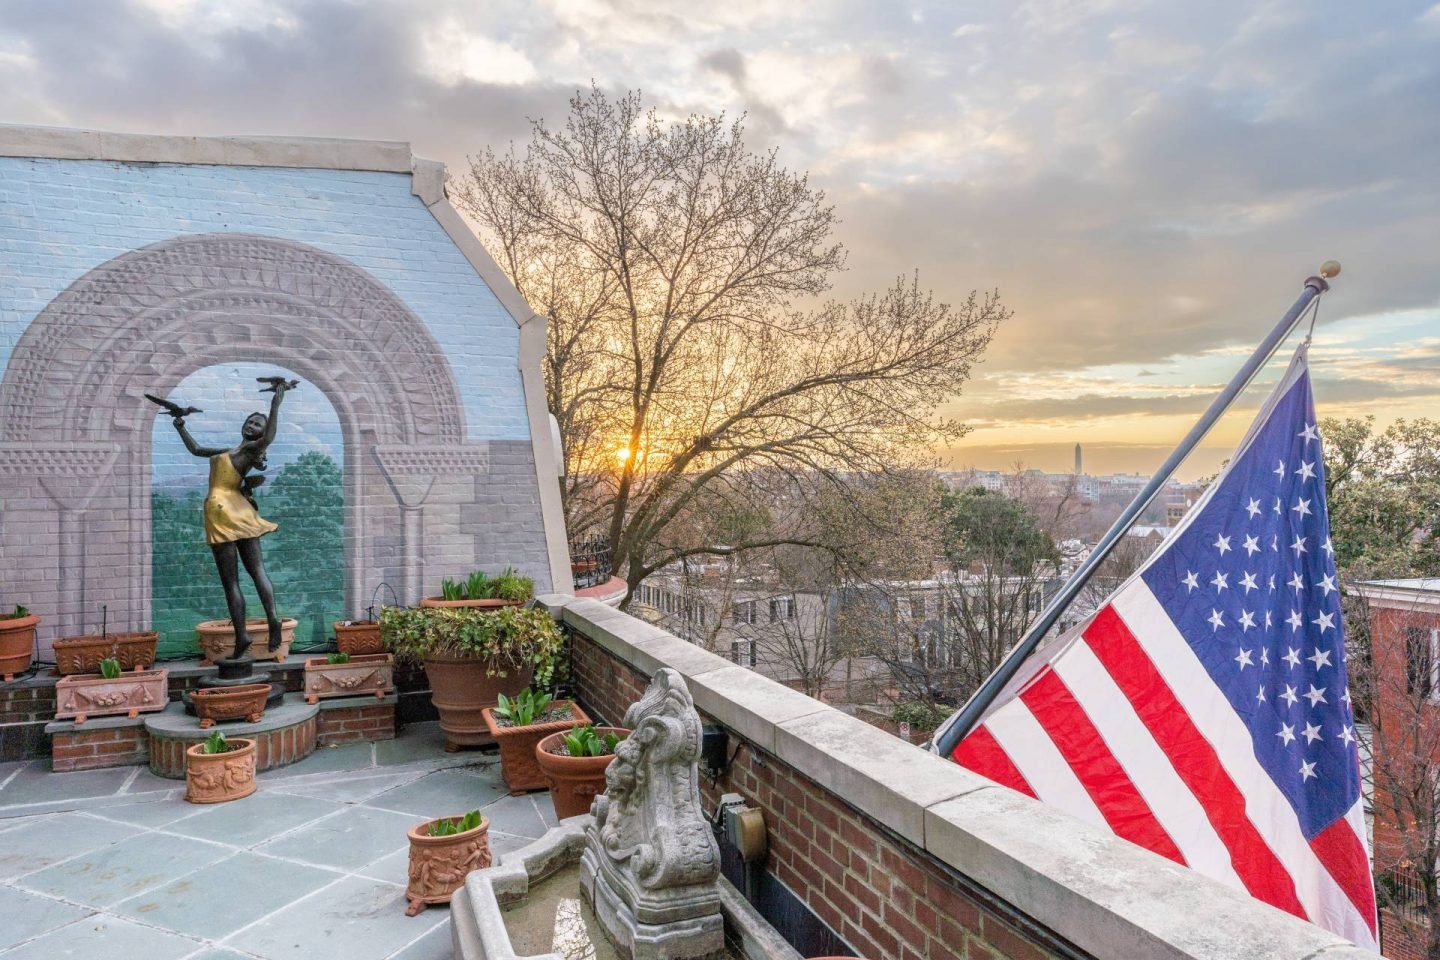 Le balcon privé offre une vue époustouflante sur la ville de Georgetown dans le district de Washington DC.